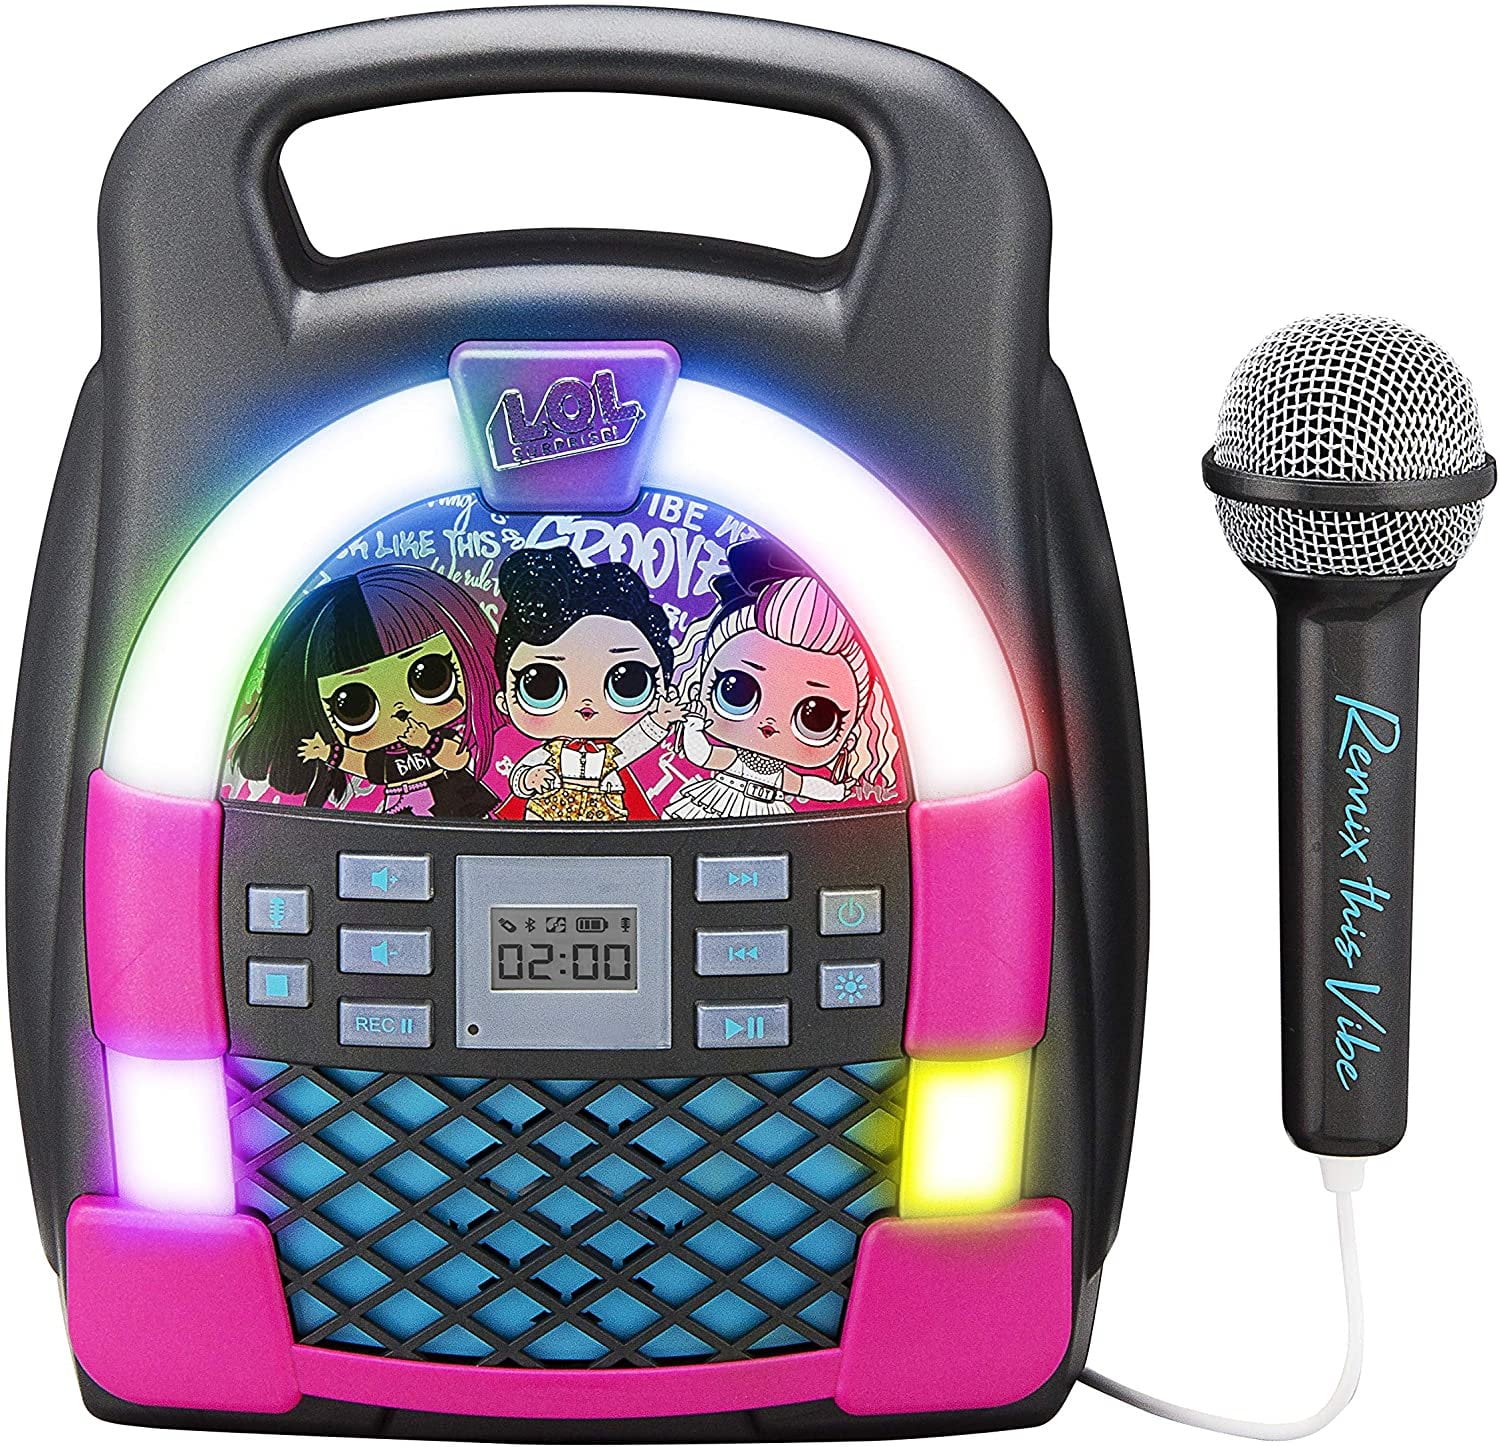 Kids Karaoke Singing Machine Microphone Singer Suitcase Toy Play Set Music LED 